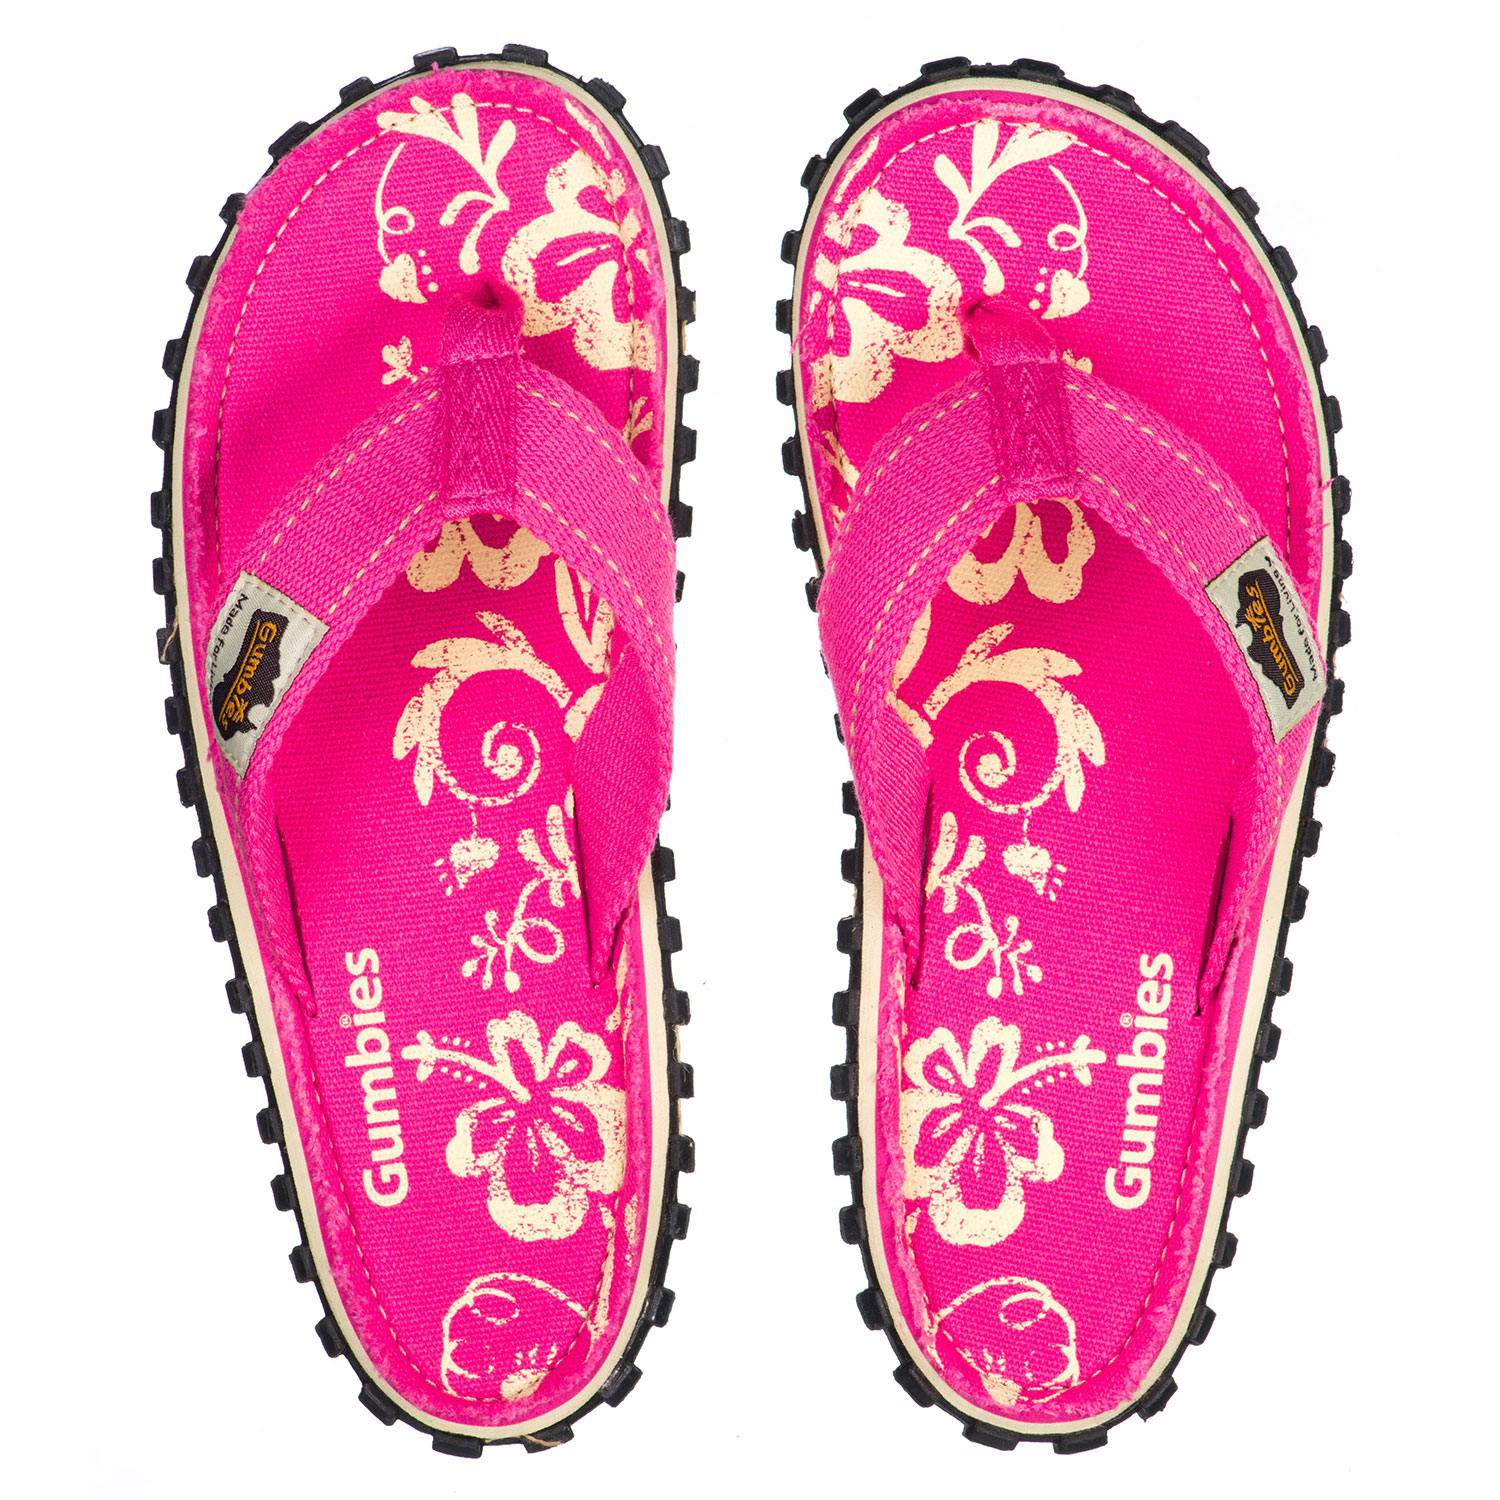 Gumbies Australian Shoes, pink hibiscus